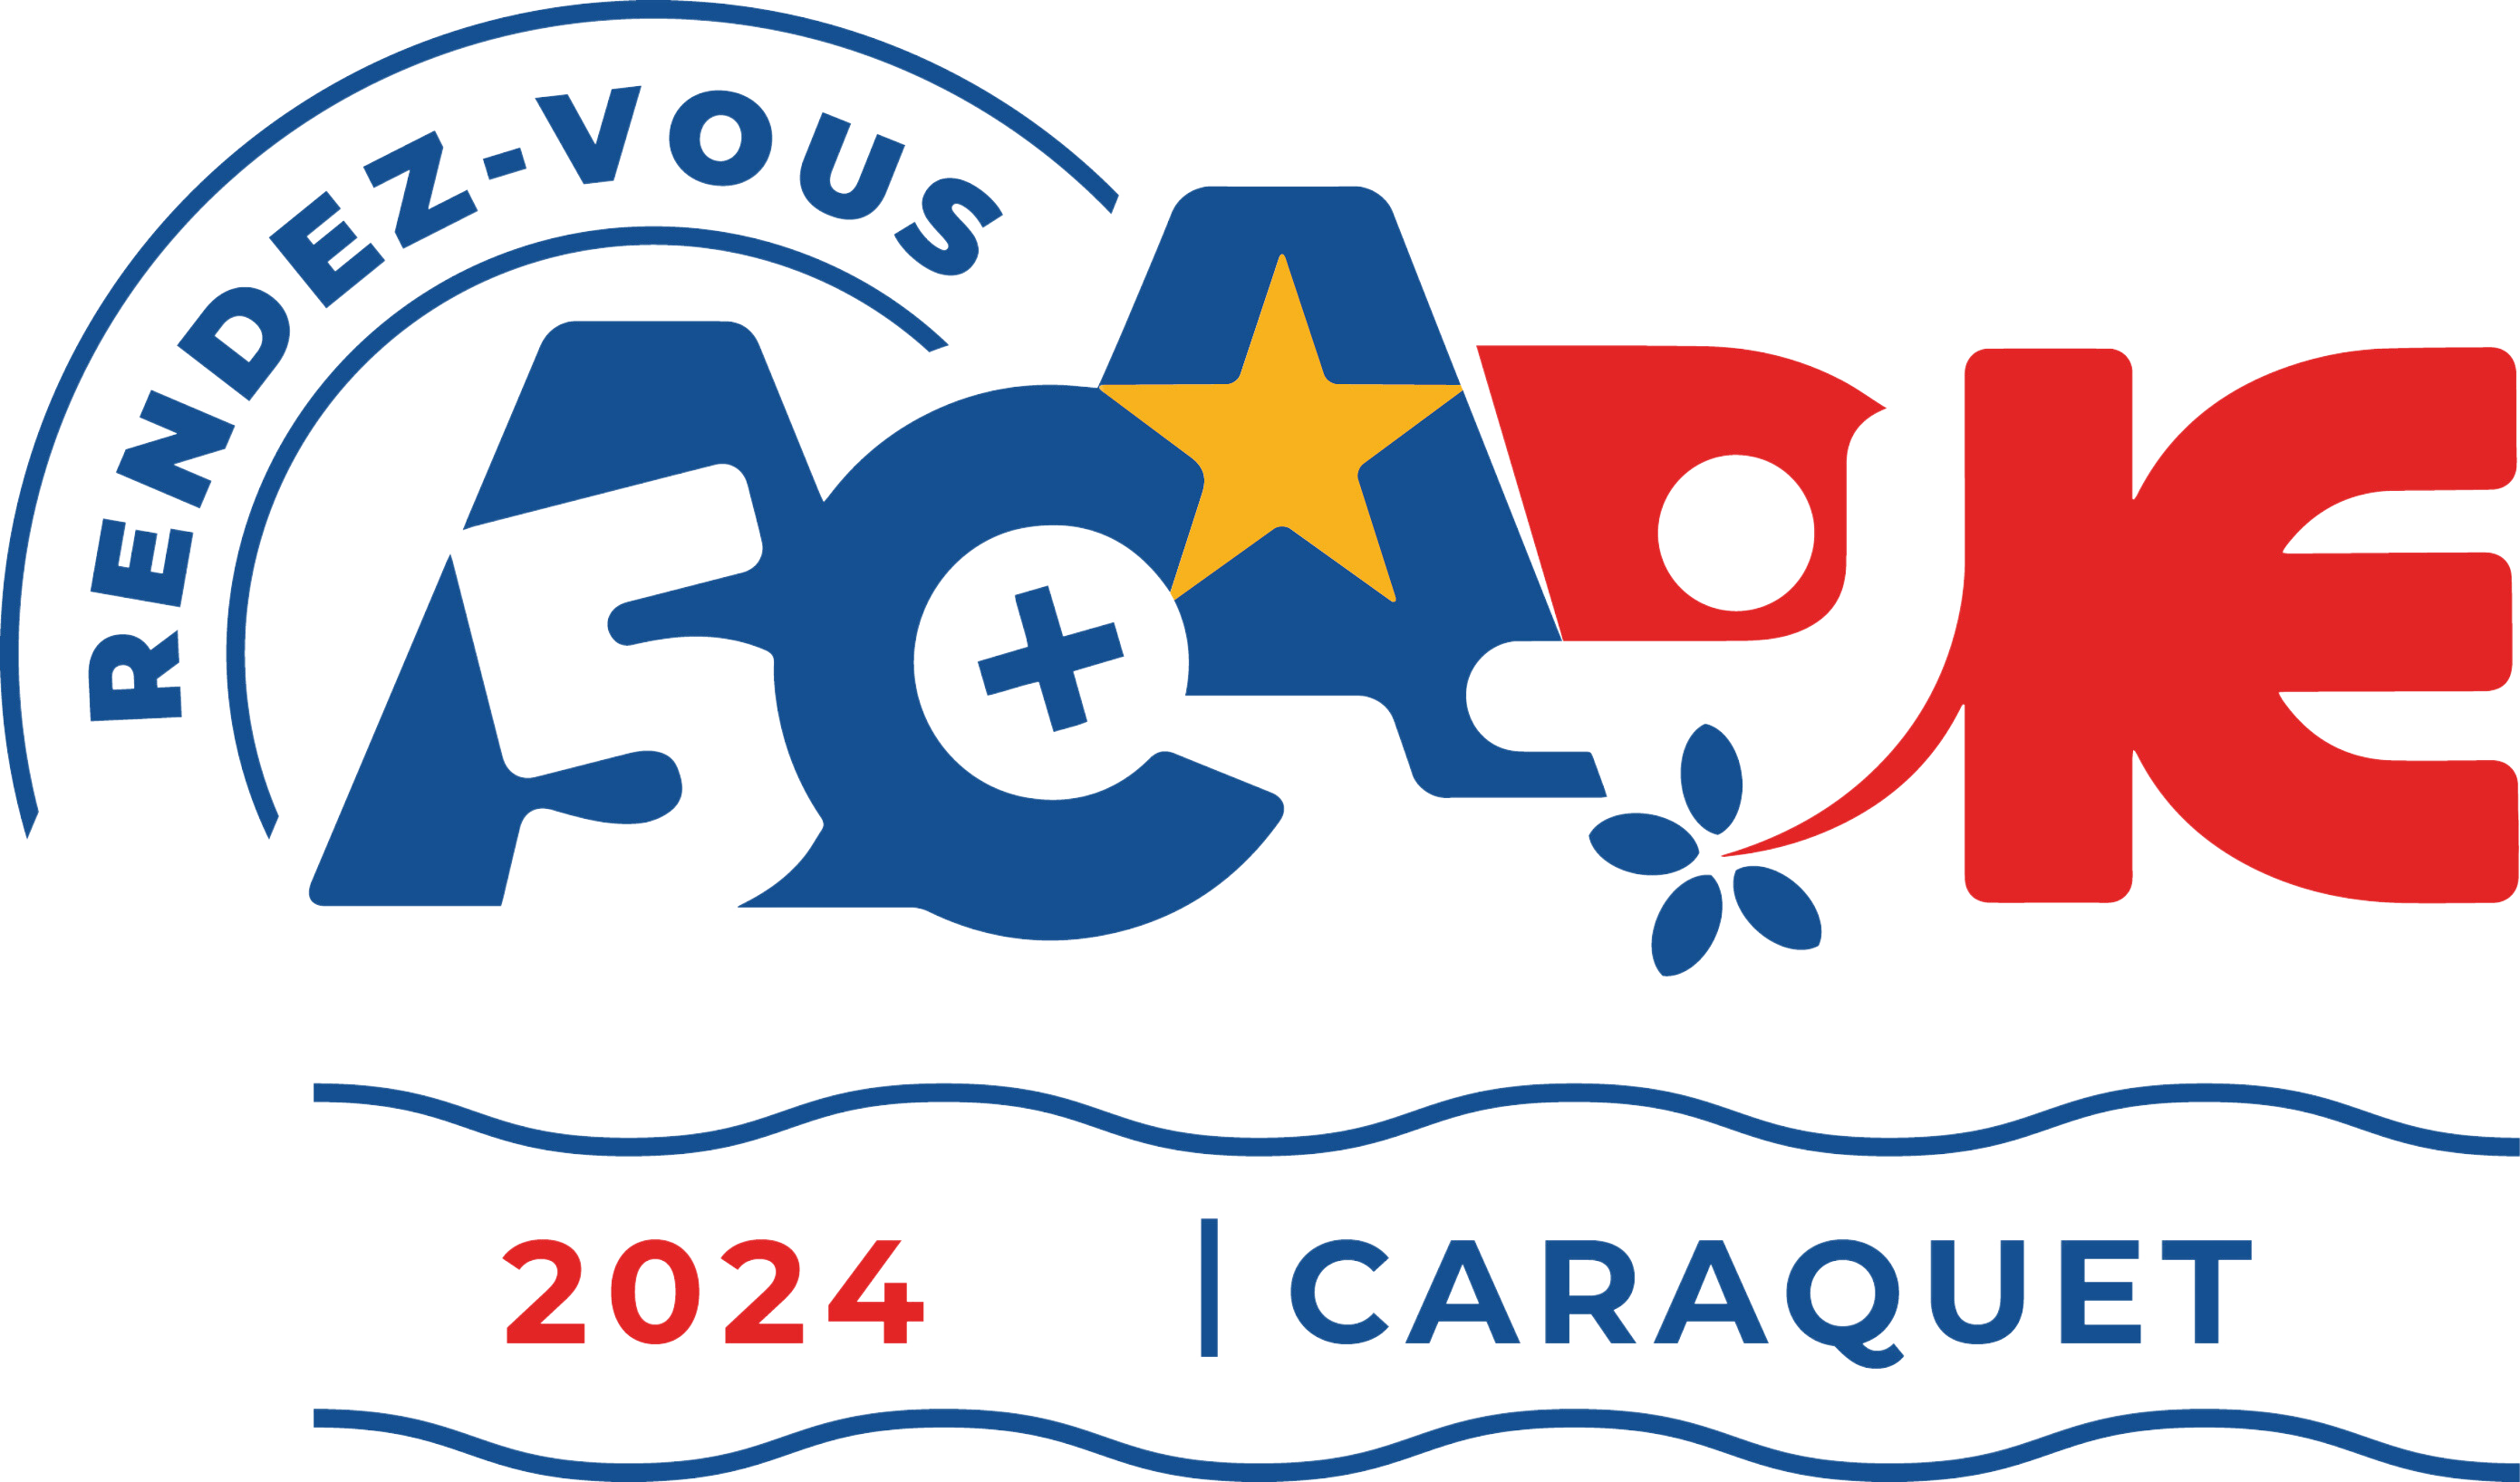 Rendez-vous Acadie 50 + Caraquet 2024